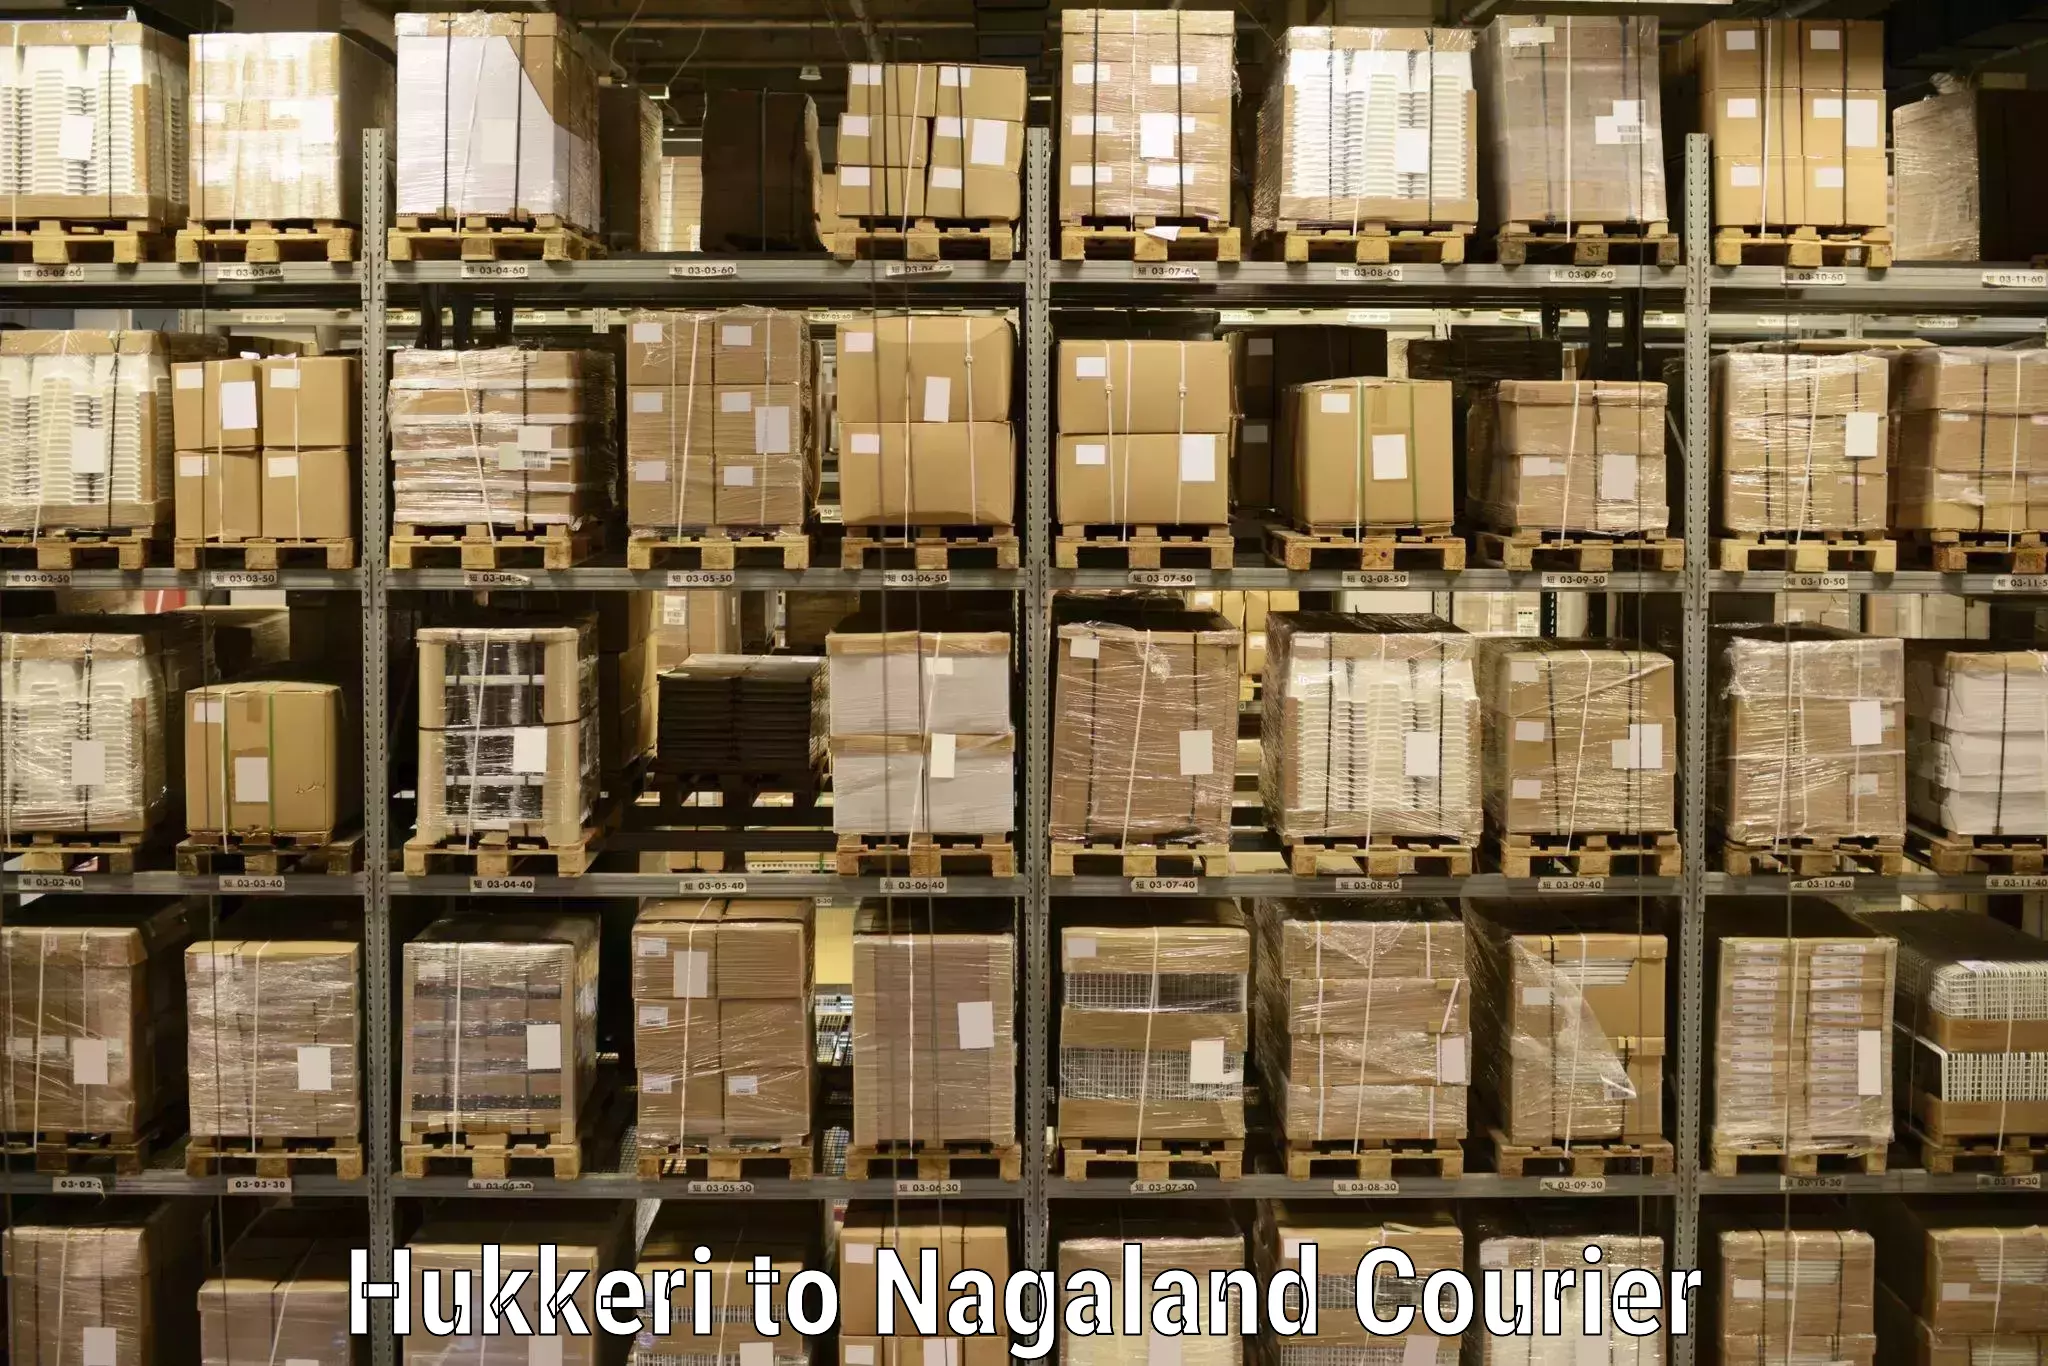 Courier service comparison Hukkeri to Dimapur